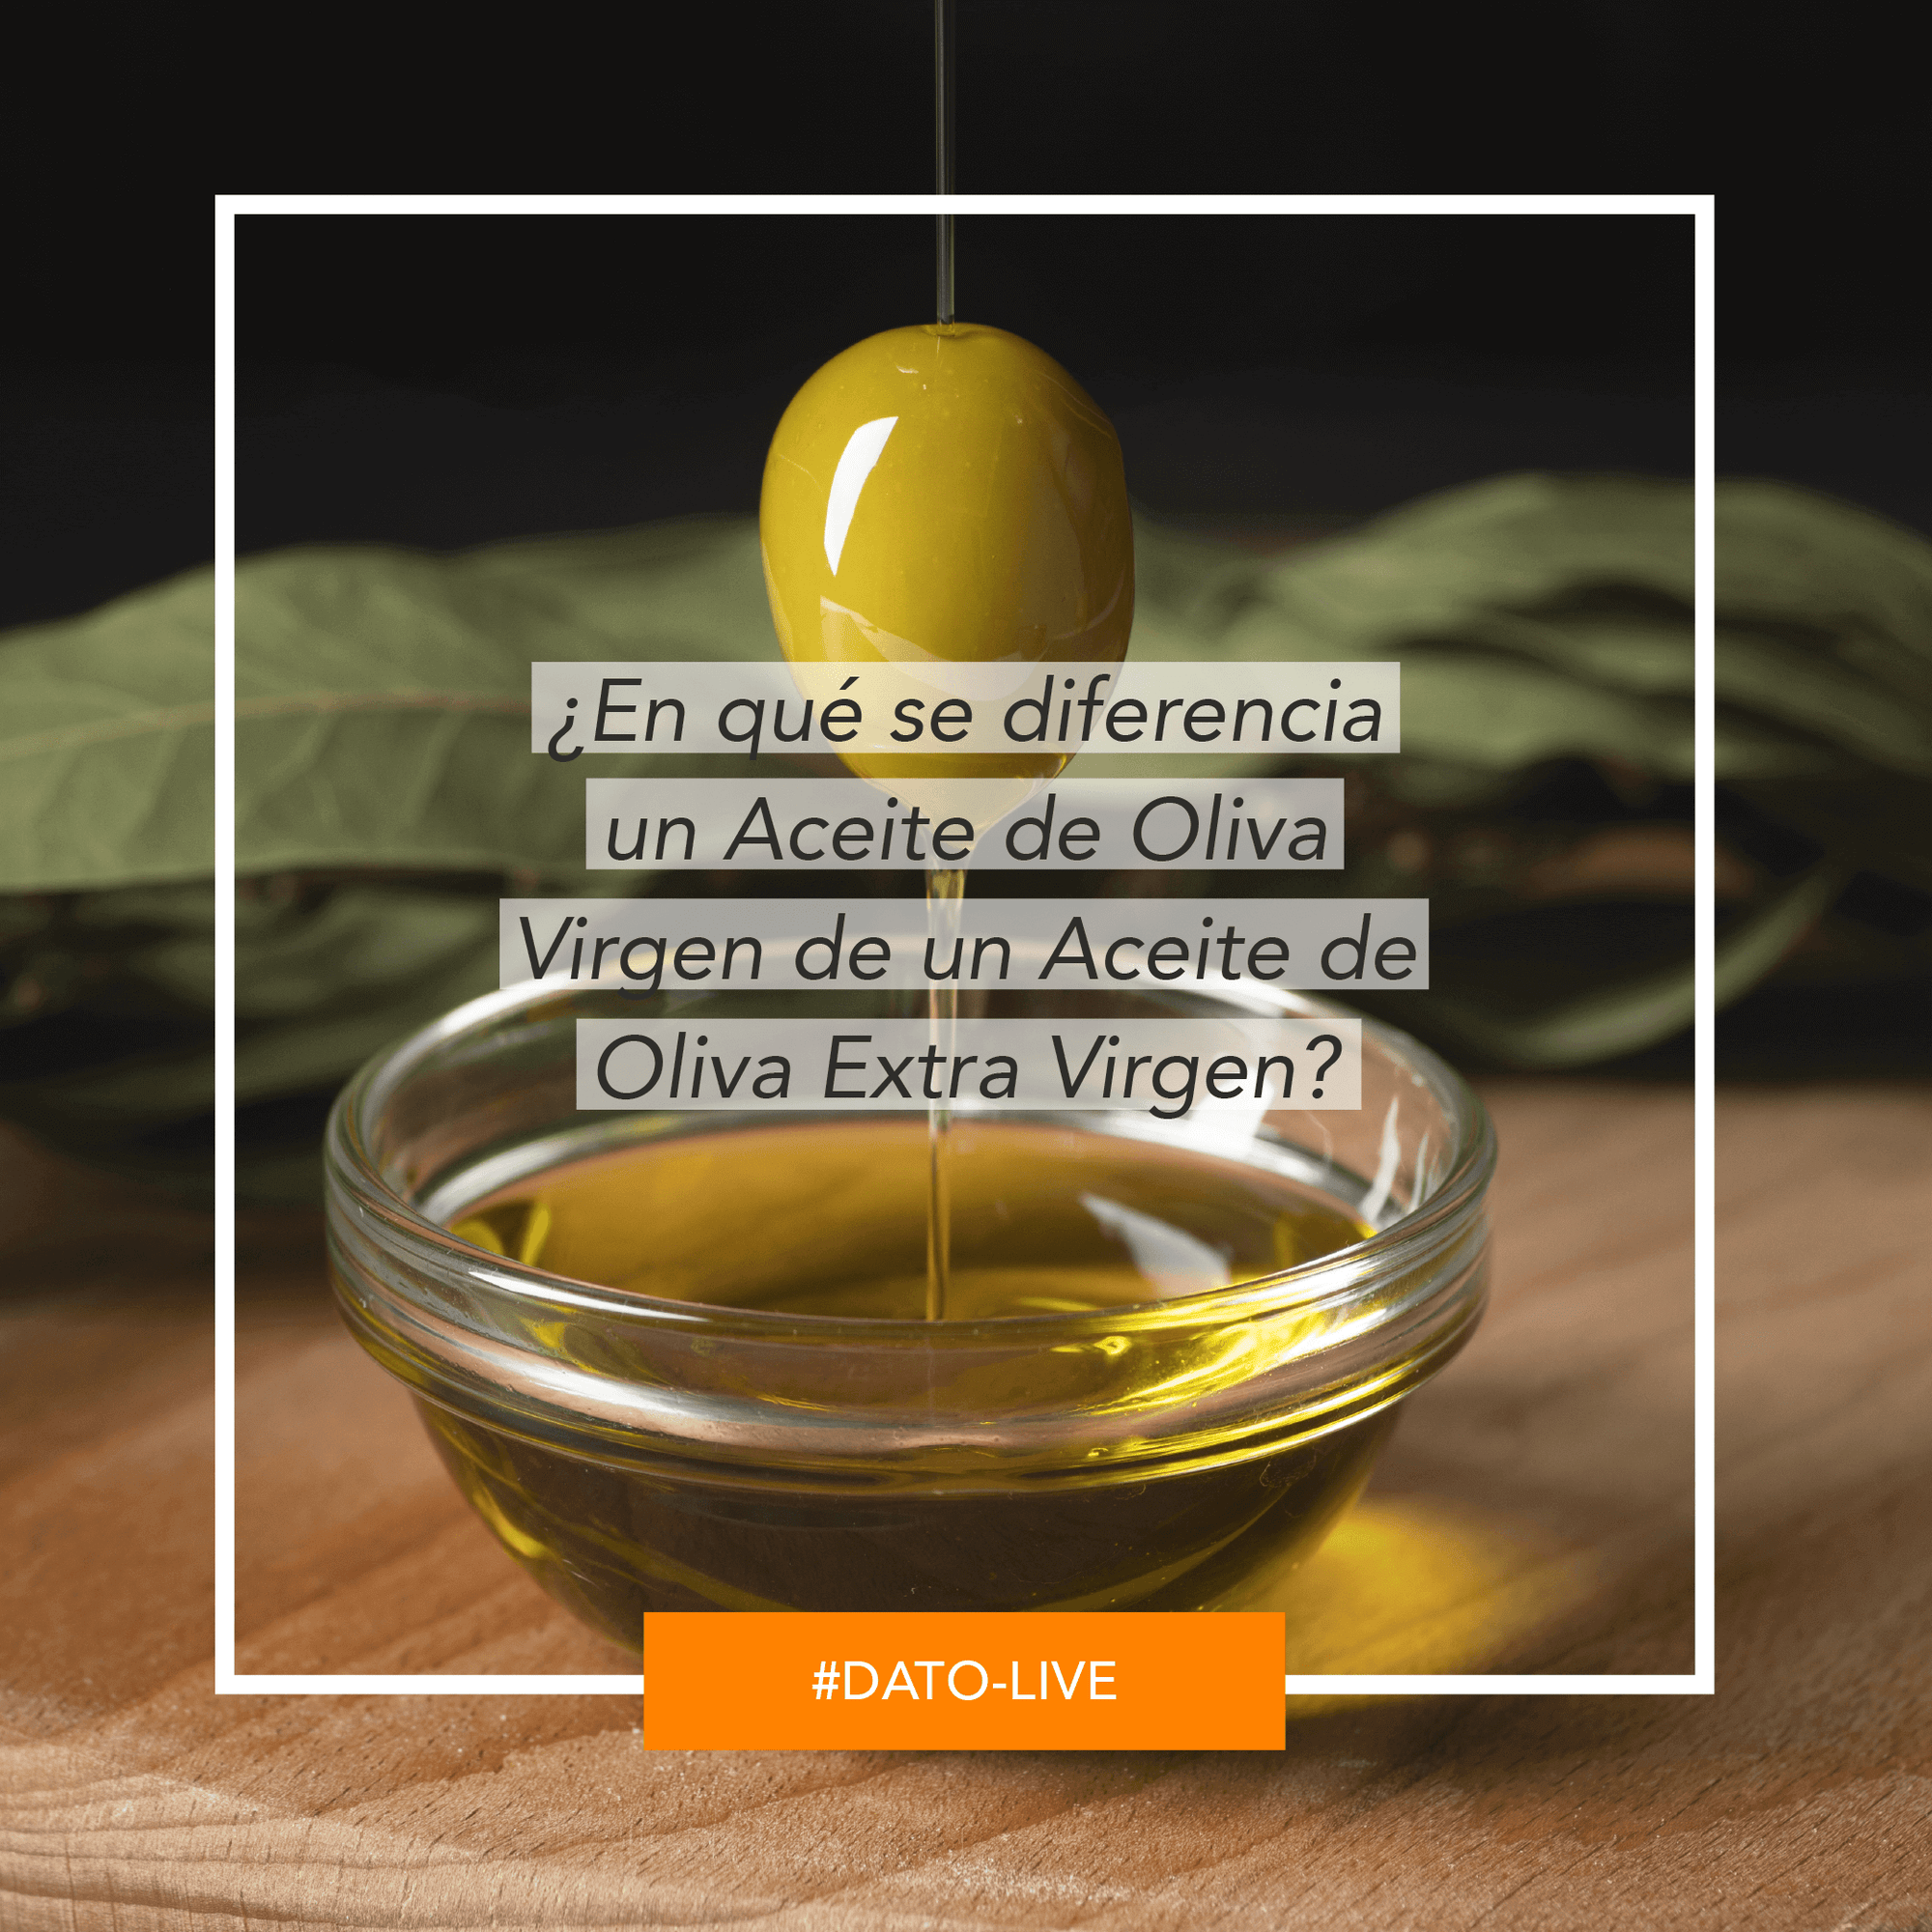 Portada de Dato O-Live que muestra el texto: "¿En qué se diferencia un aceite de oliva virgen de un aceite de oliva extra virgen?".